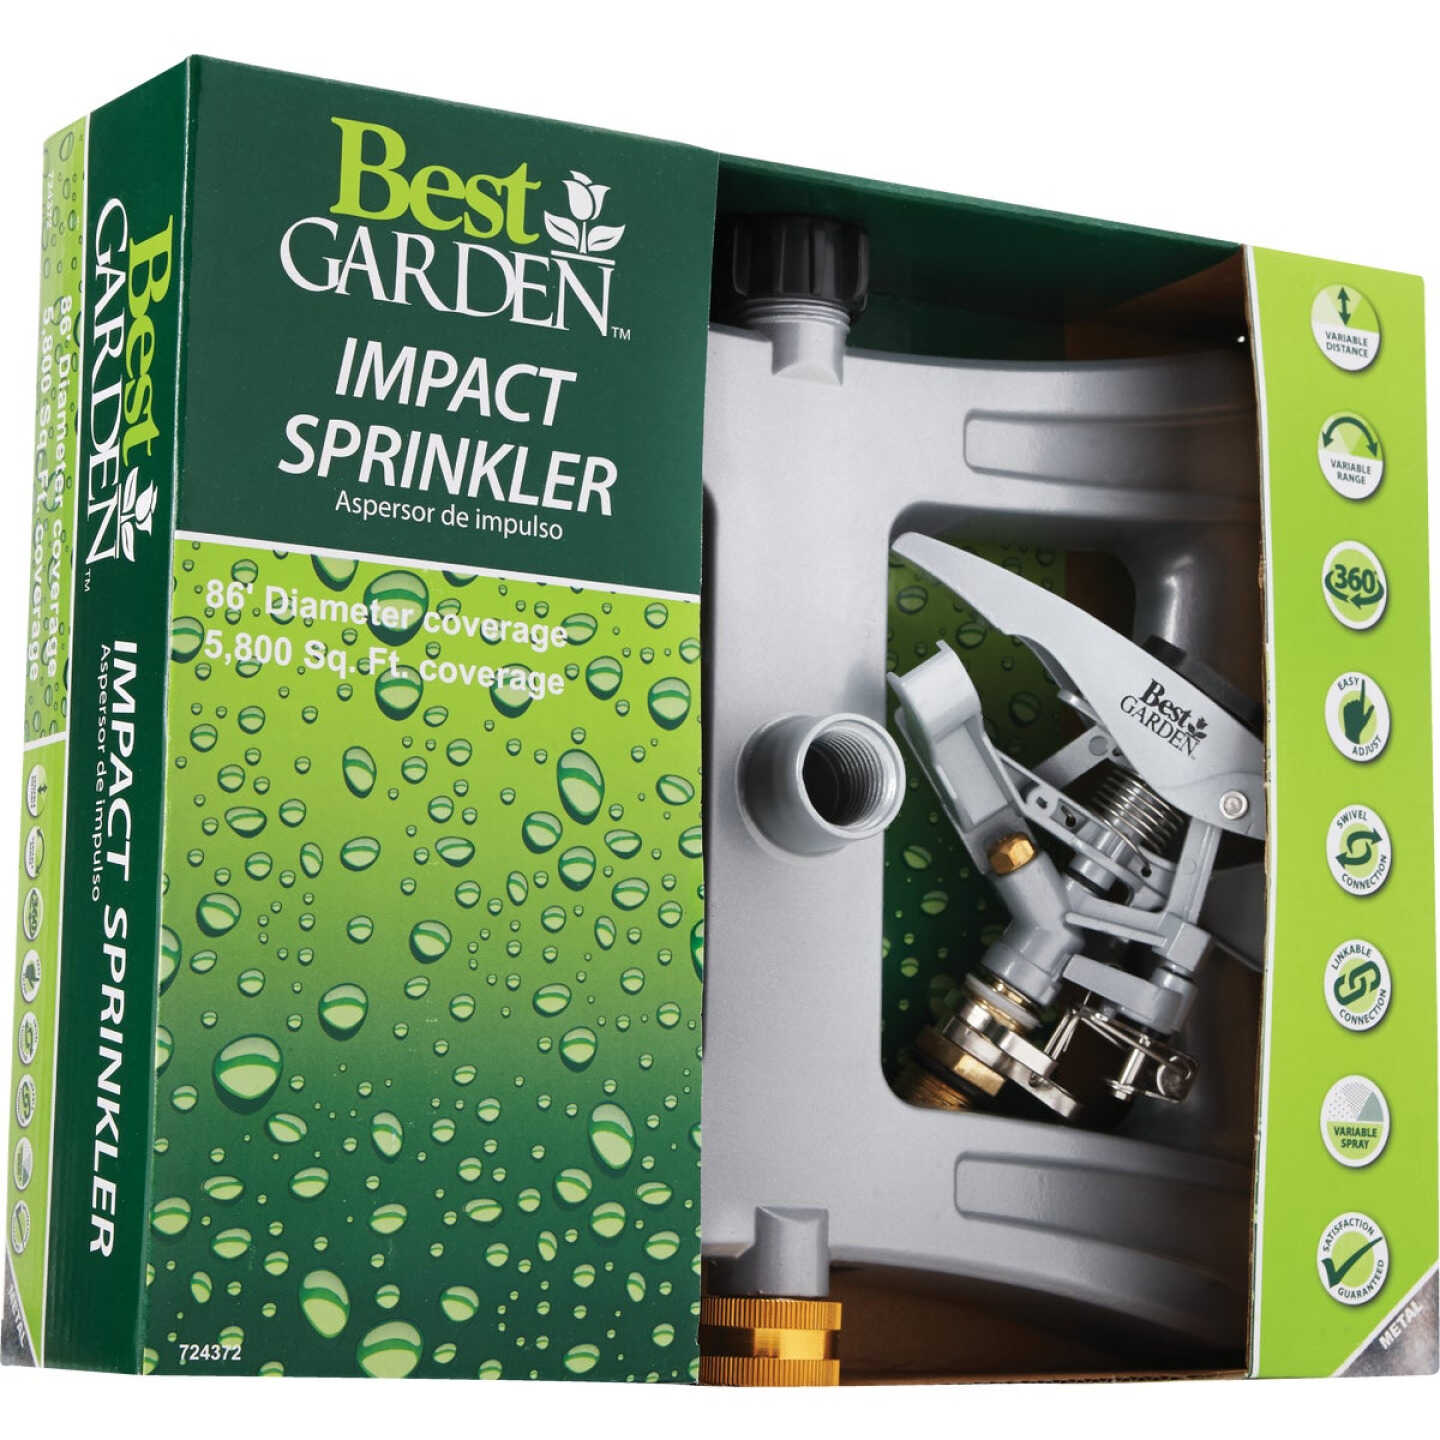 Best Garden Poly 5800 Sq. Ft. Triple Spike Impulse Sprinkler